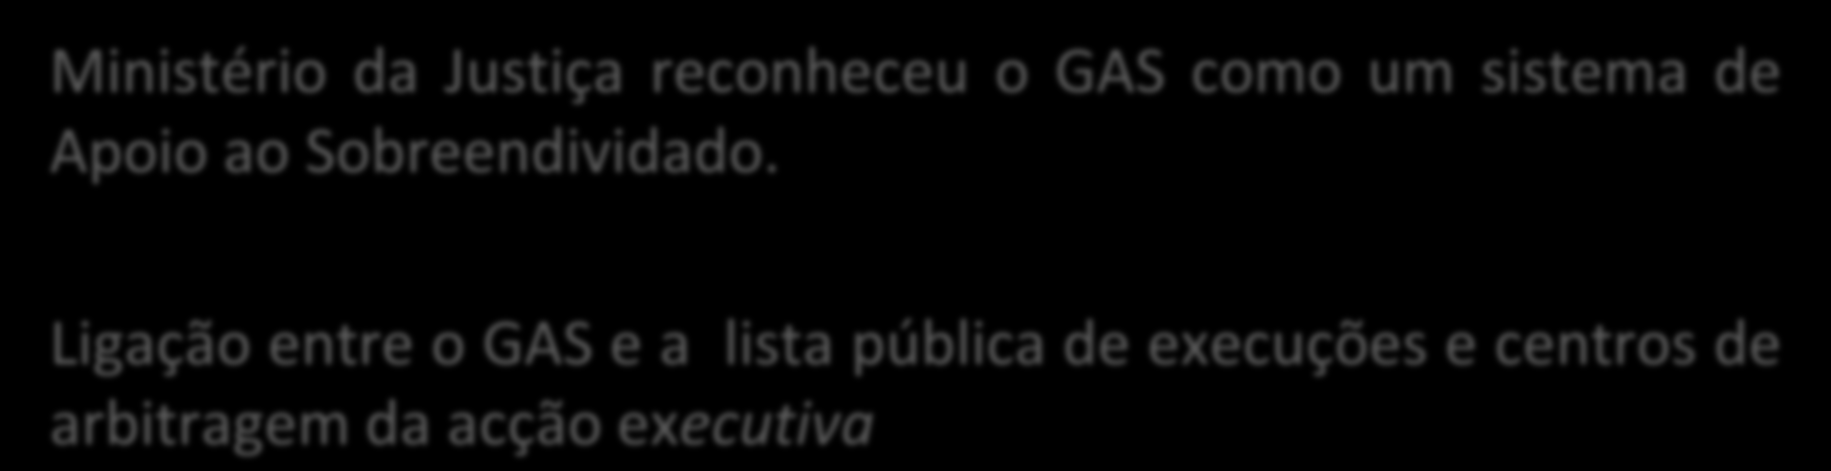 GAS É RECONHECIDO COMO UM SISTEMA DE APOIO AO SOBREENDIVIDADO Ministério da Justiça reconheceu o GAS como um sistema de